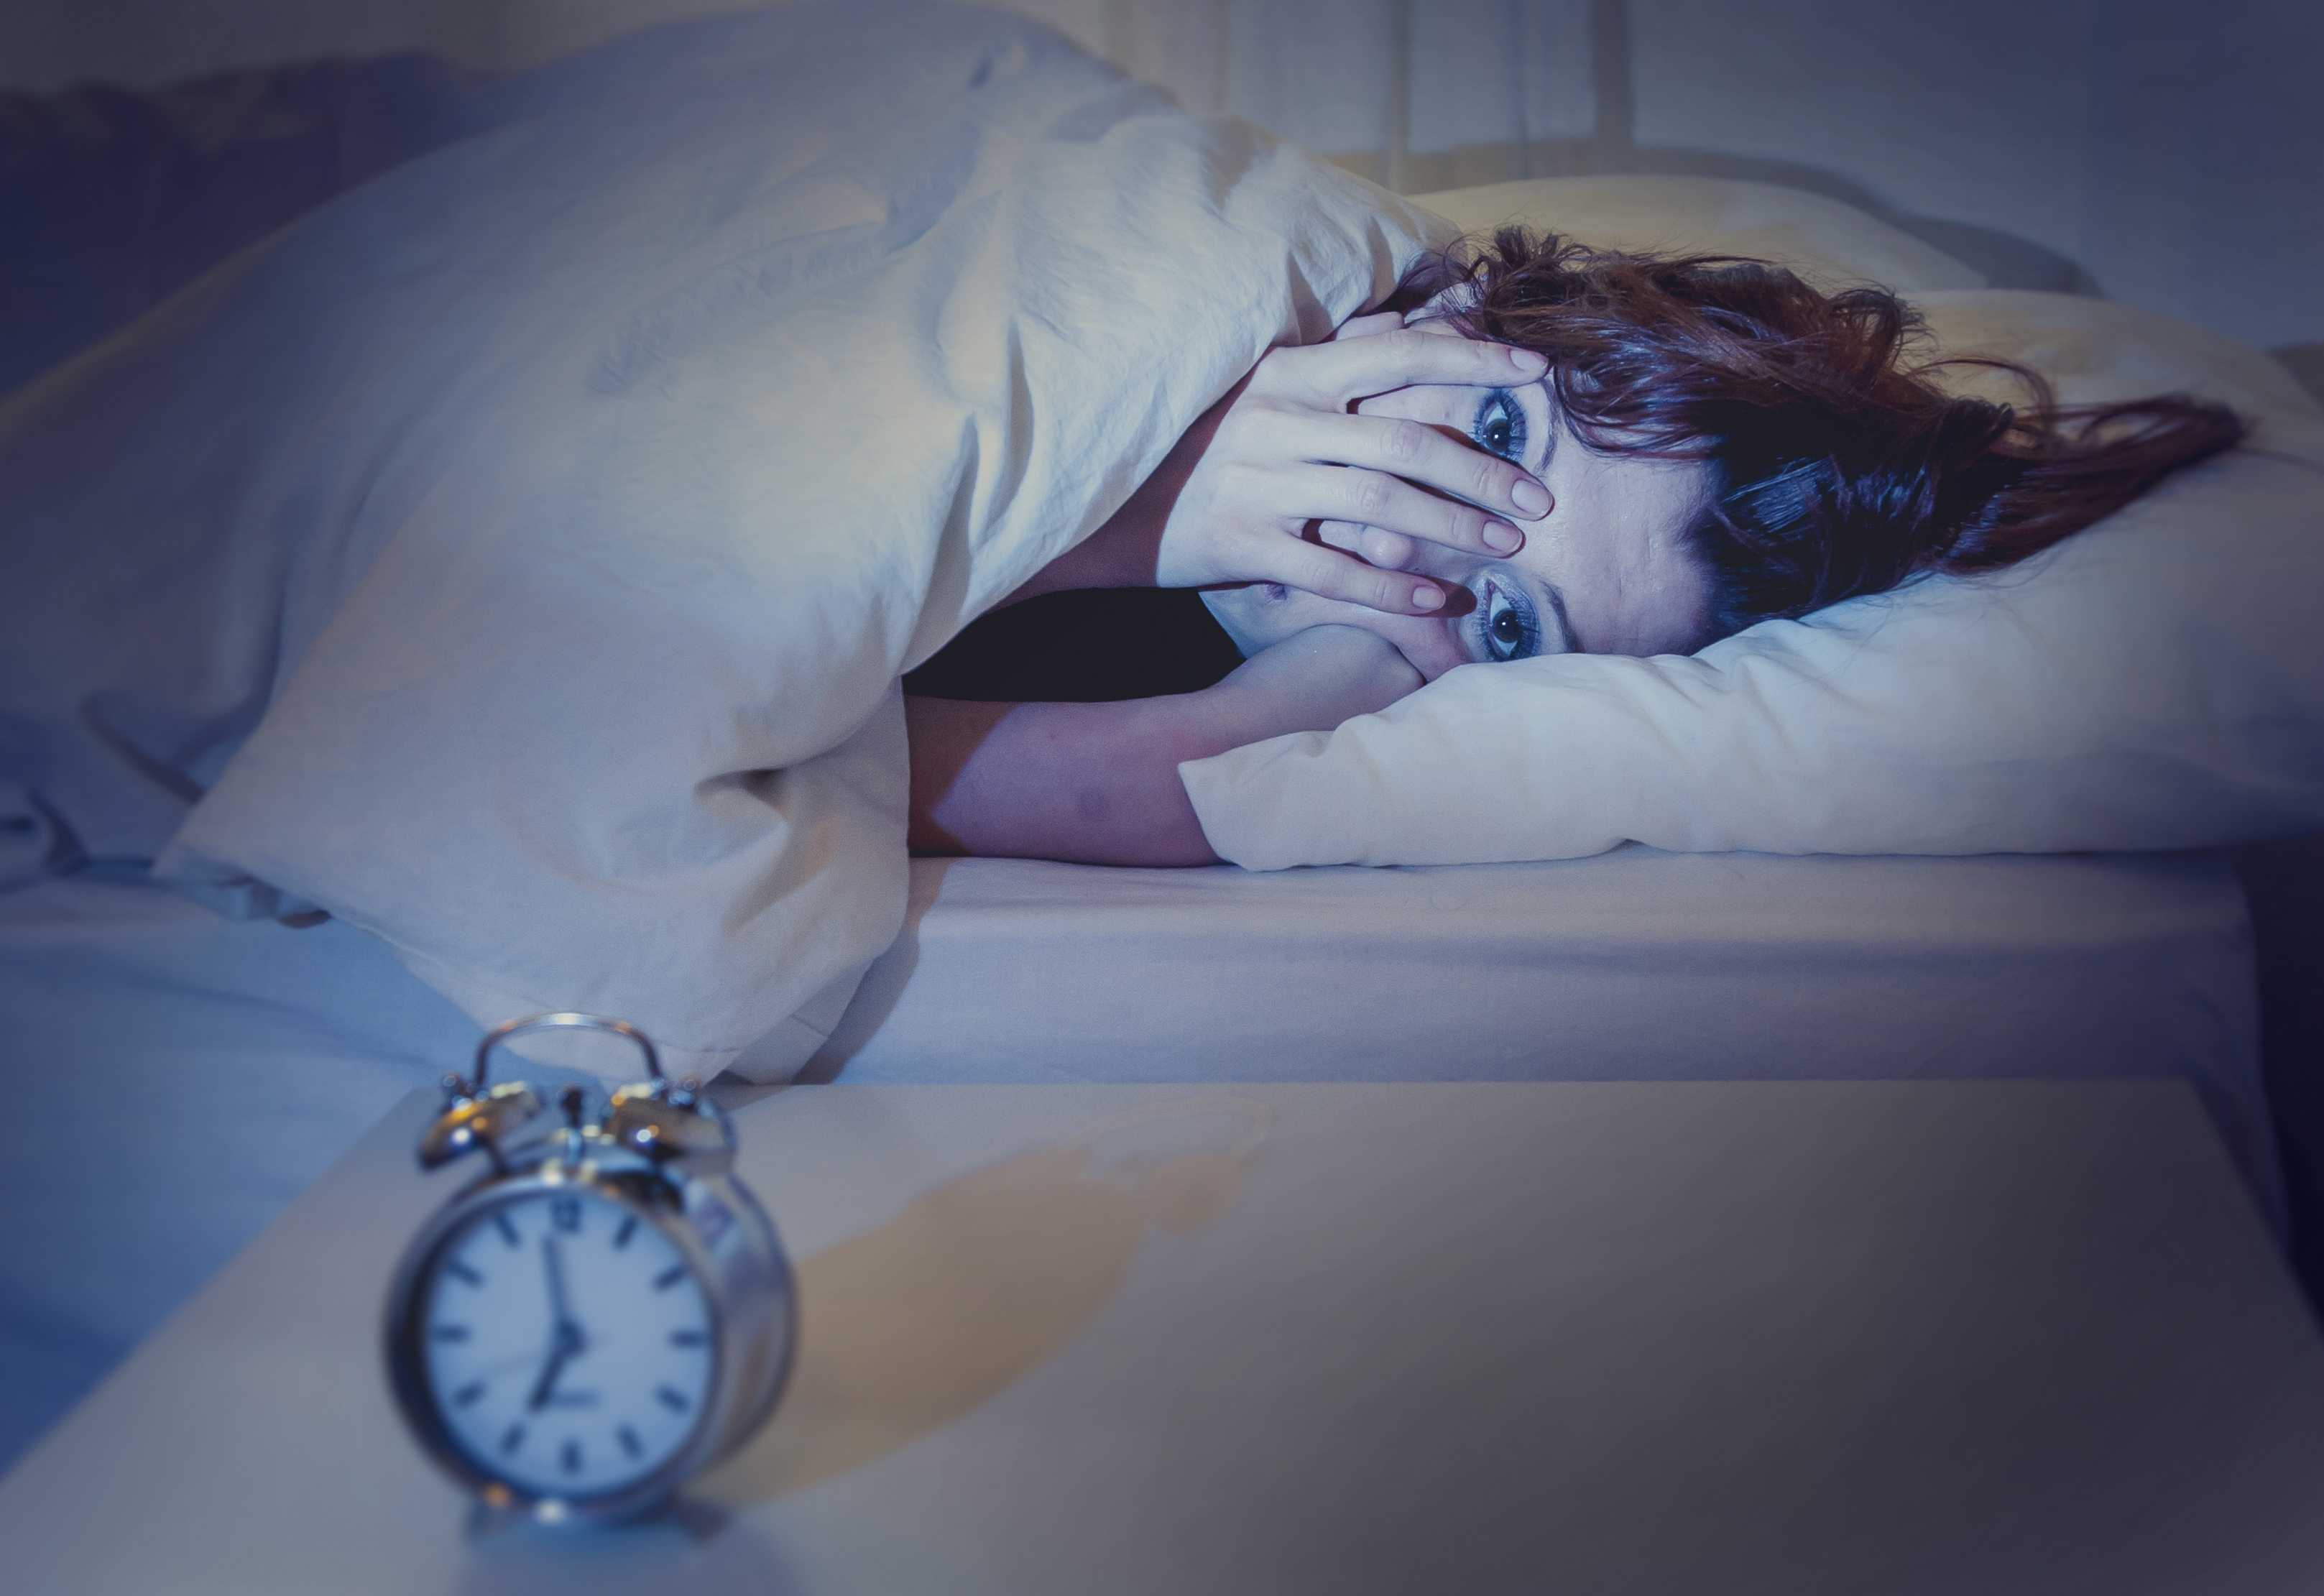 Почему снятся плохие сны и как от них избавиться?